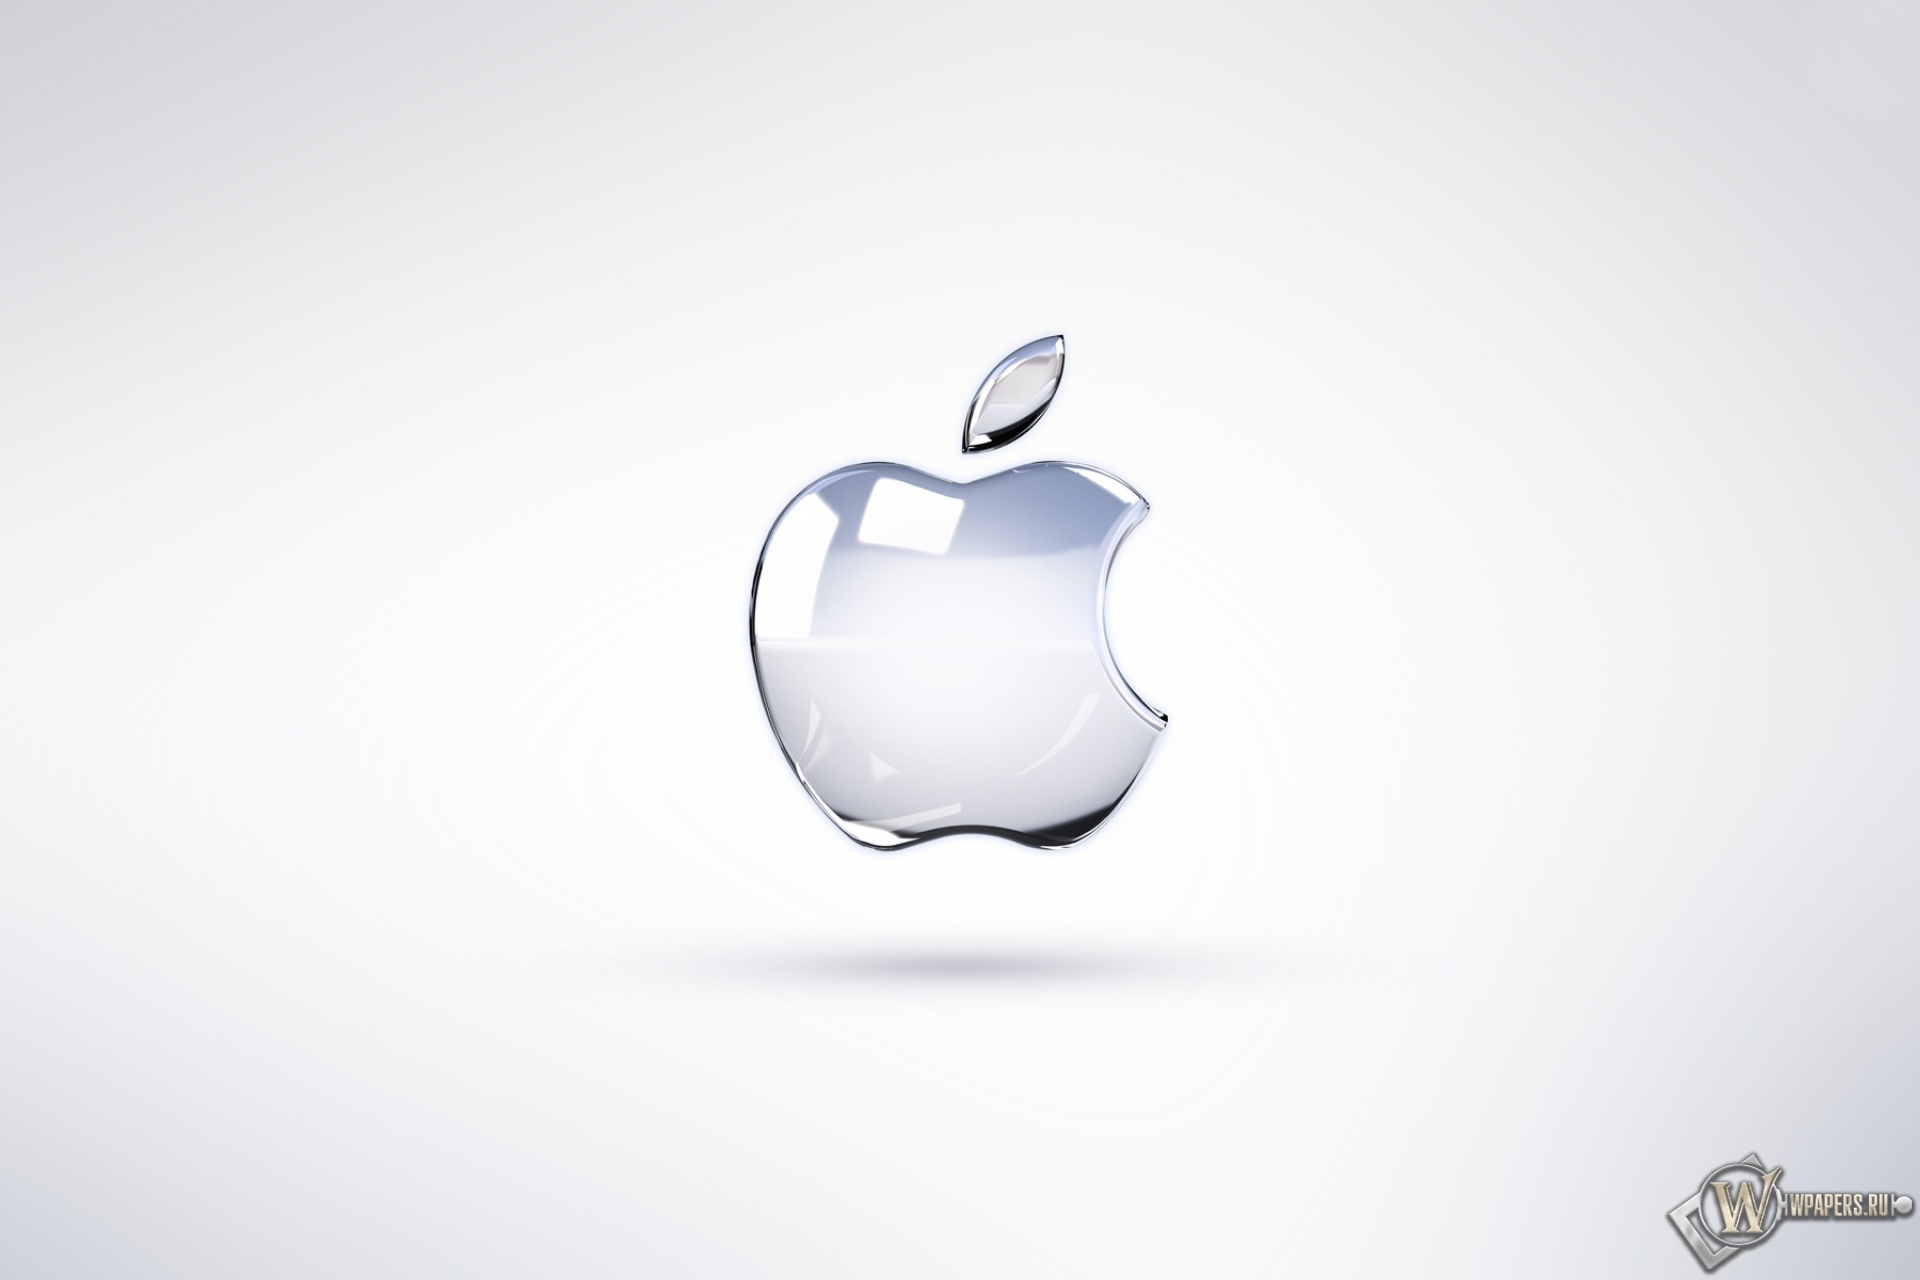 Скачать обои Apple Logo Broken Glass Логотип Apple для рабочего стола 1920х1280 25 16